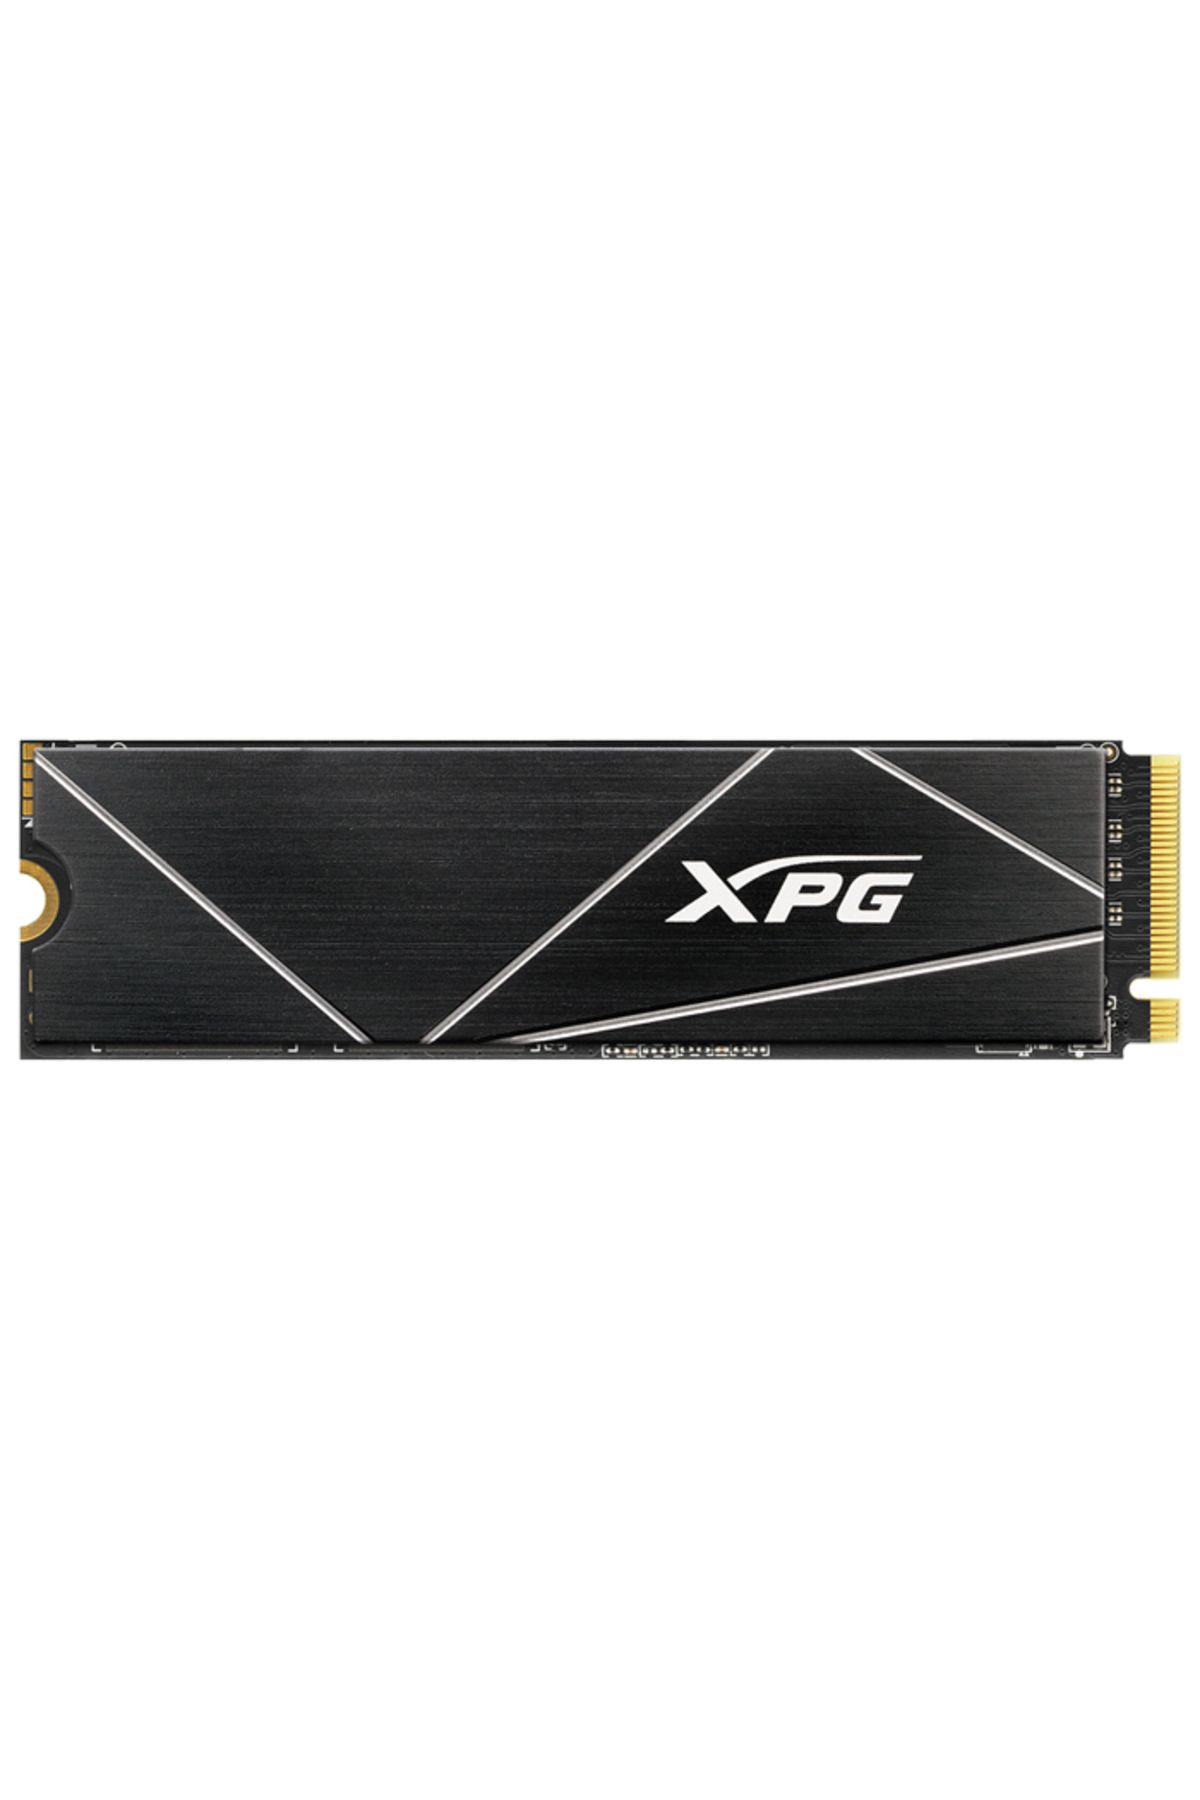 XPG Gammix S70 Blade Agammıxs70b-1t-cs 1tb 7400/5500mb/s Pcıe Nvme M.2 Ssd Disk